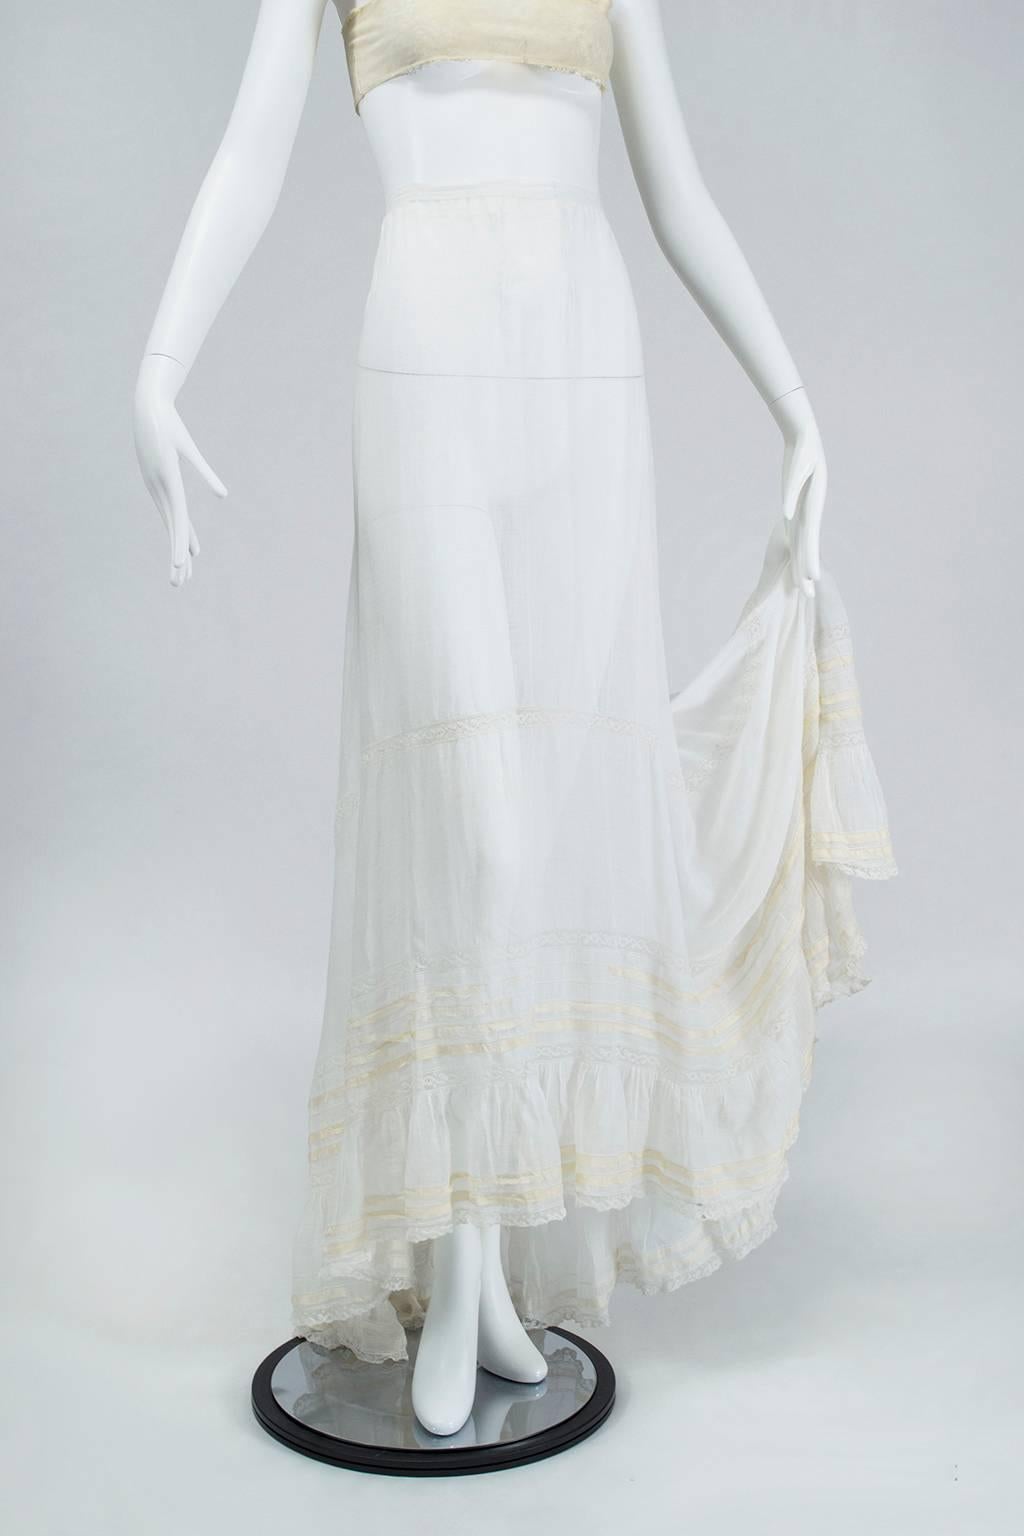 1890s petticoat